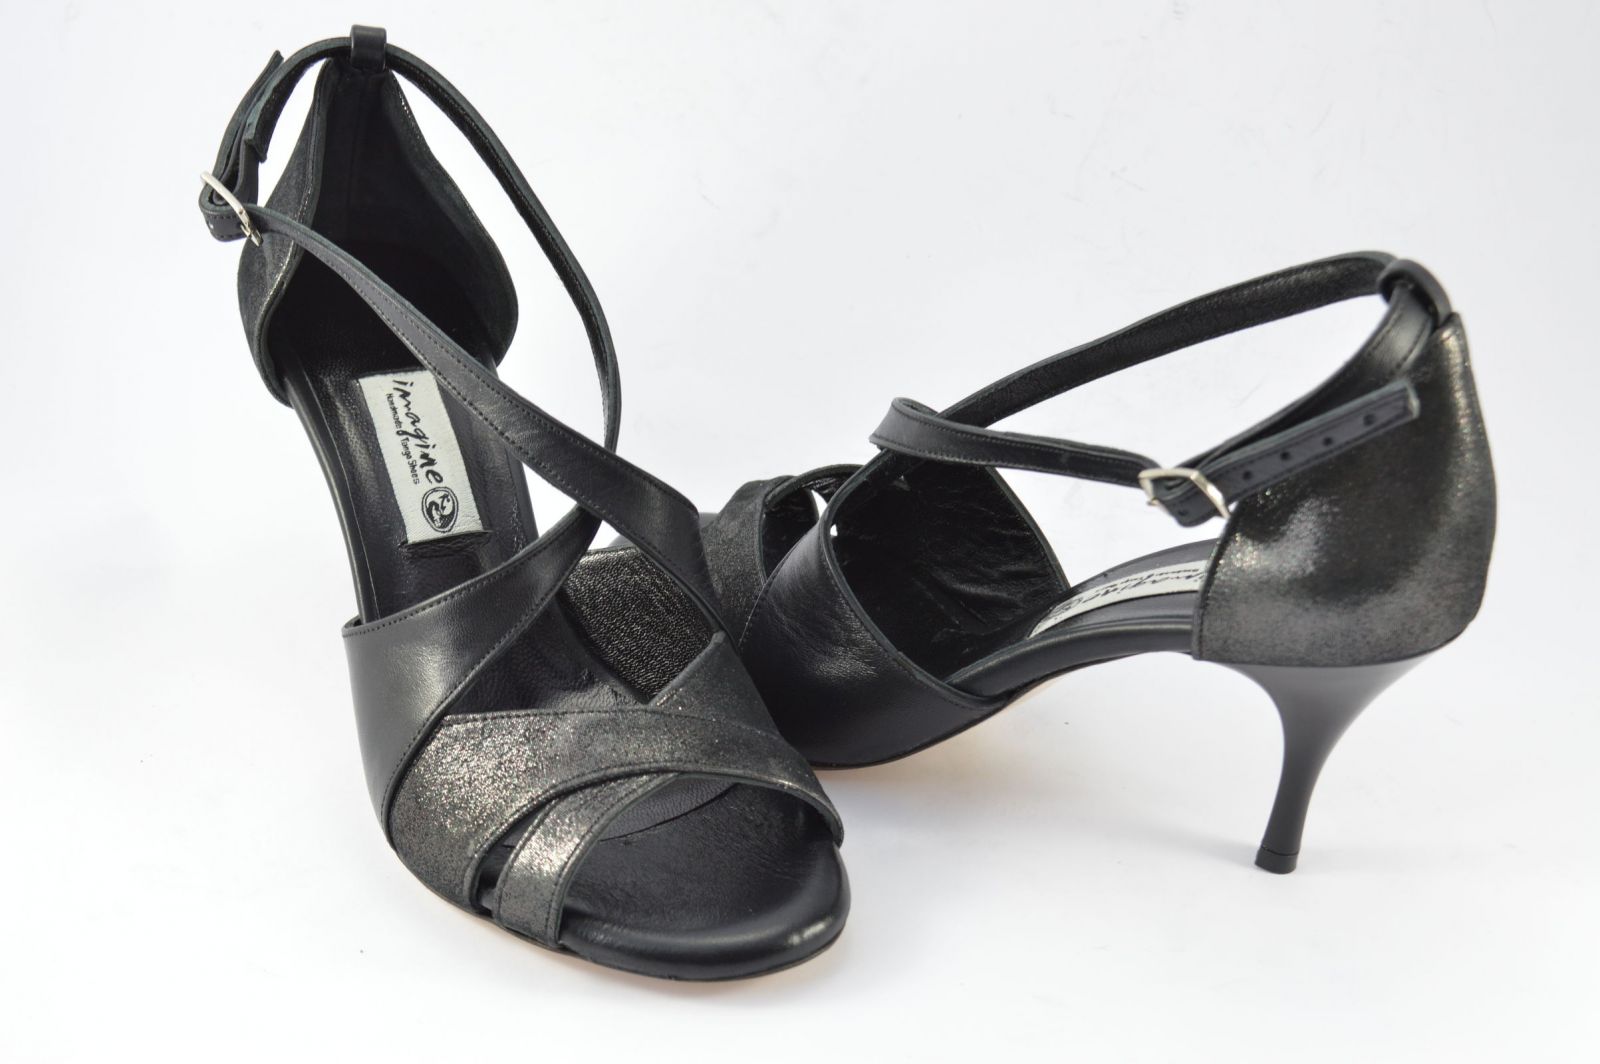 Γυναικείο παπούτσι tango, peep toe, από μαύρο δέρμα και μαύρο δέρμα πέρλα.